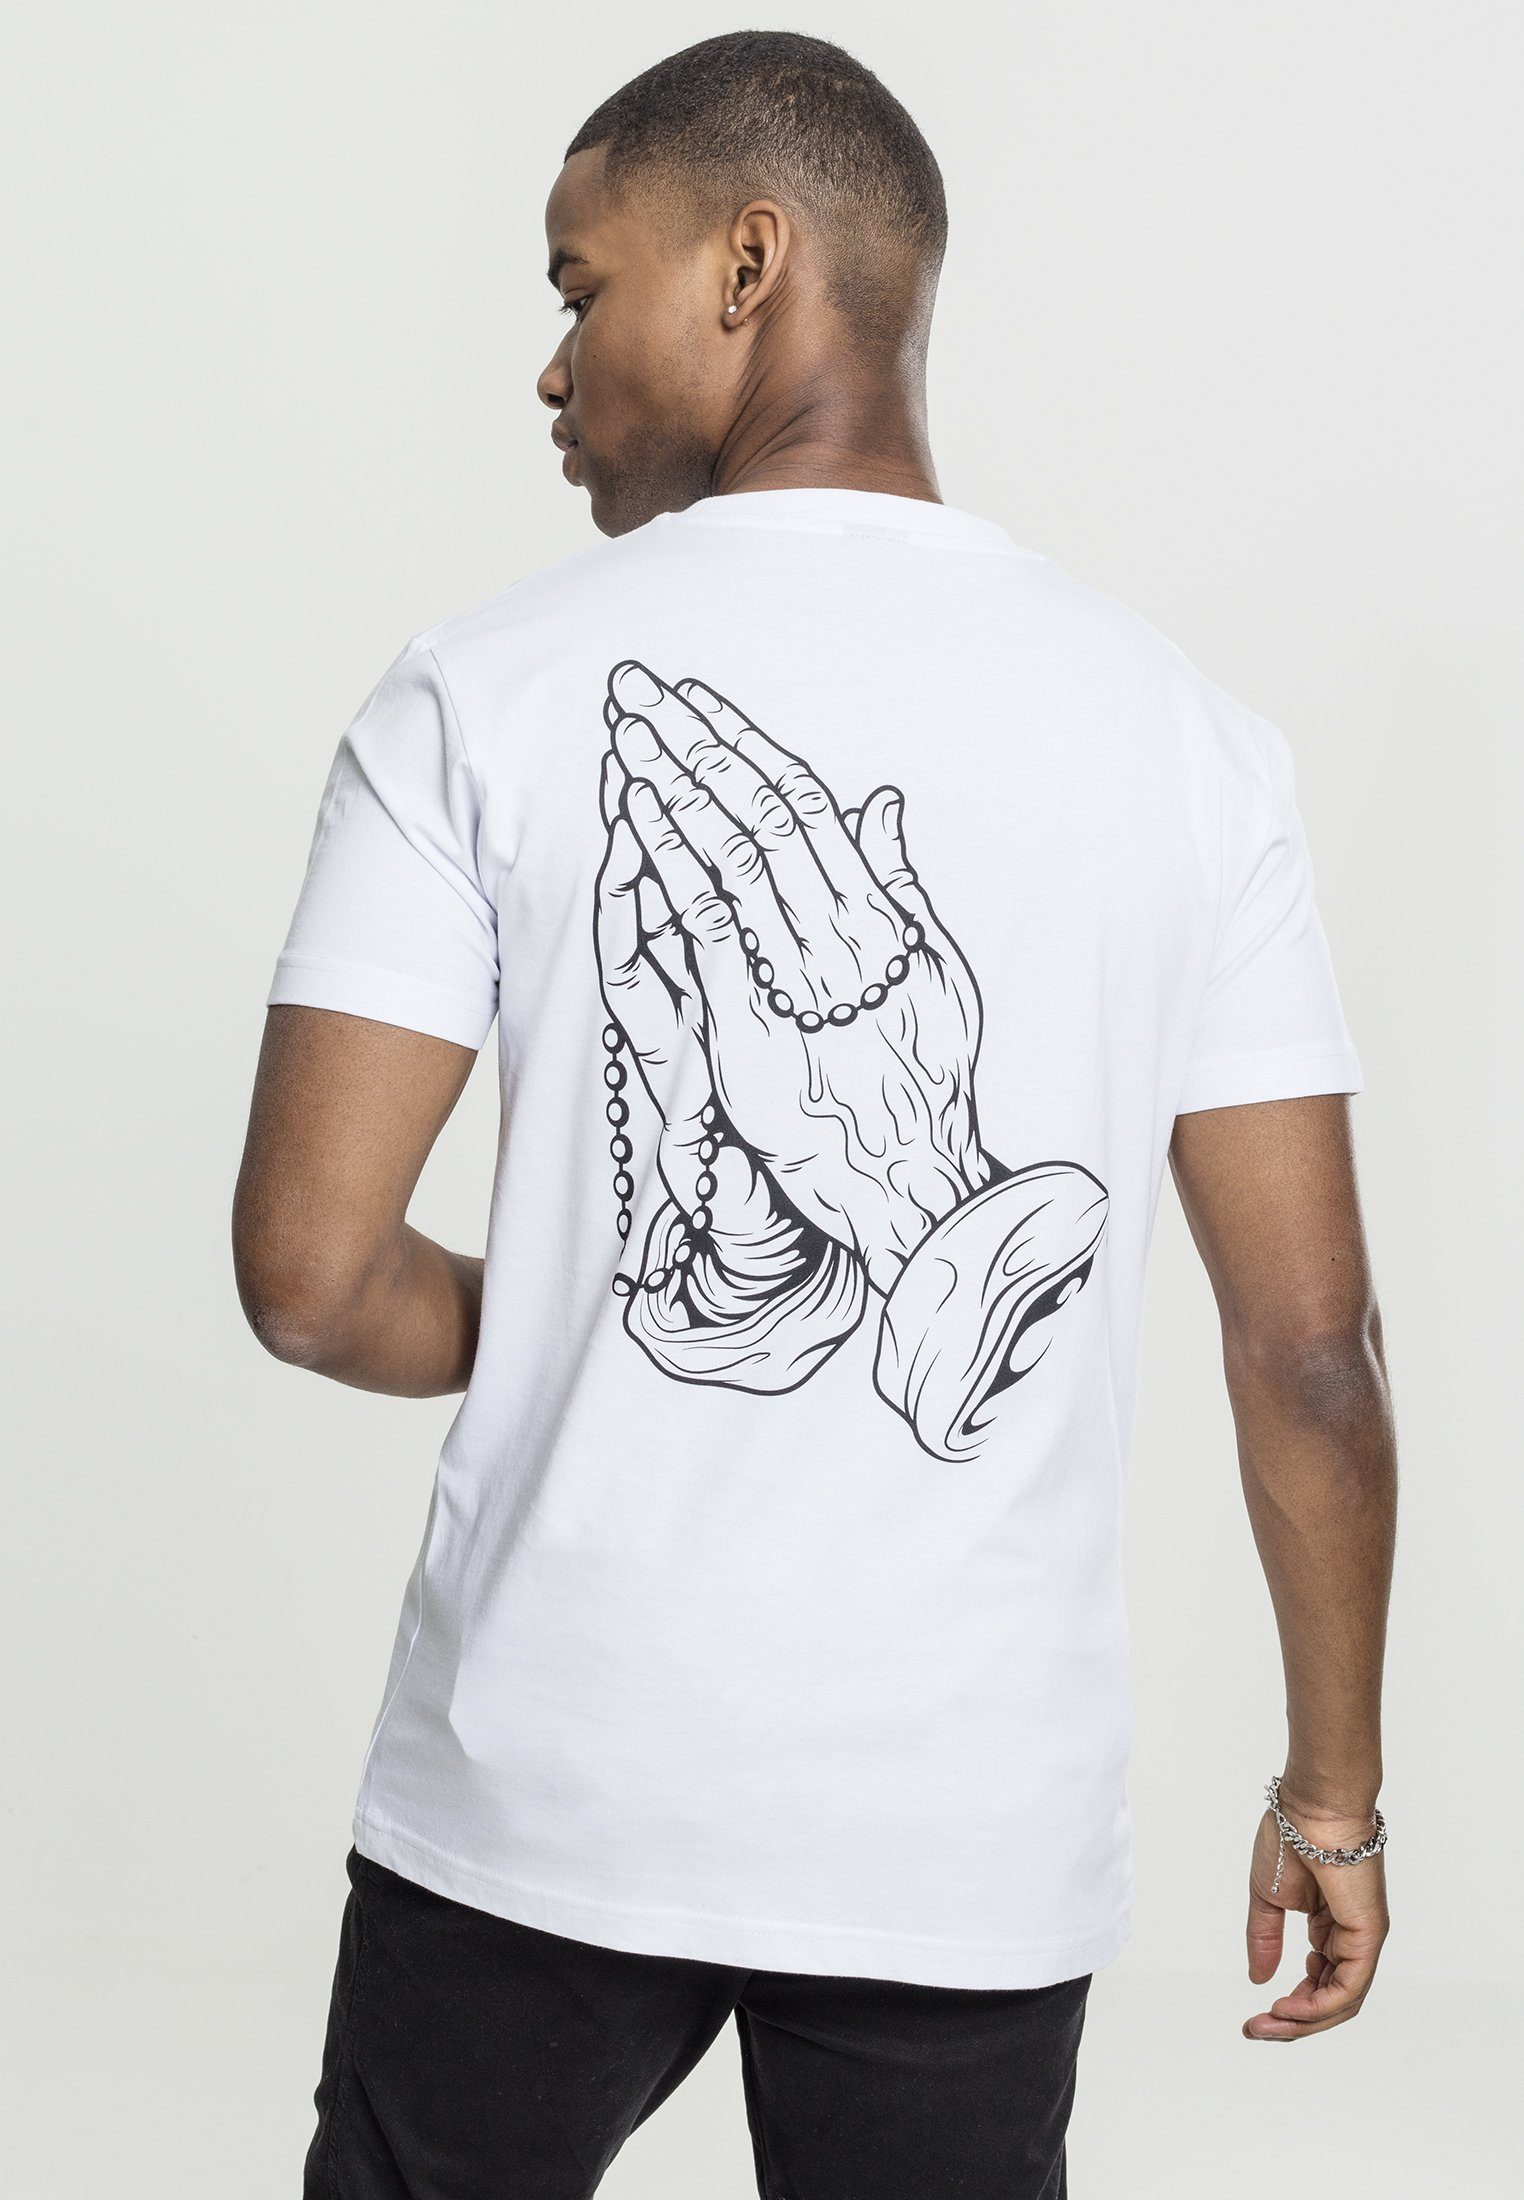 Hands Hands (1-tlg) Mister Pray T-Shirt white Herren MT630 Pray Tee Tee MisterTee